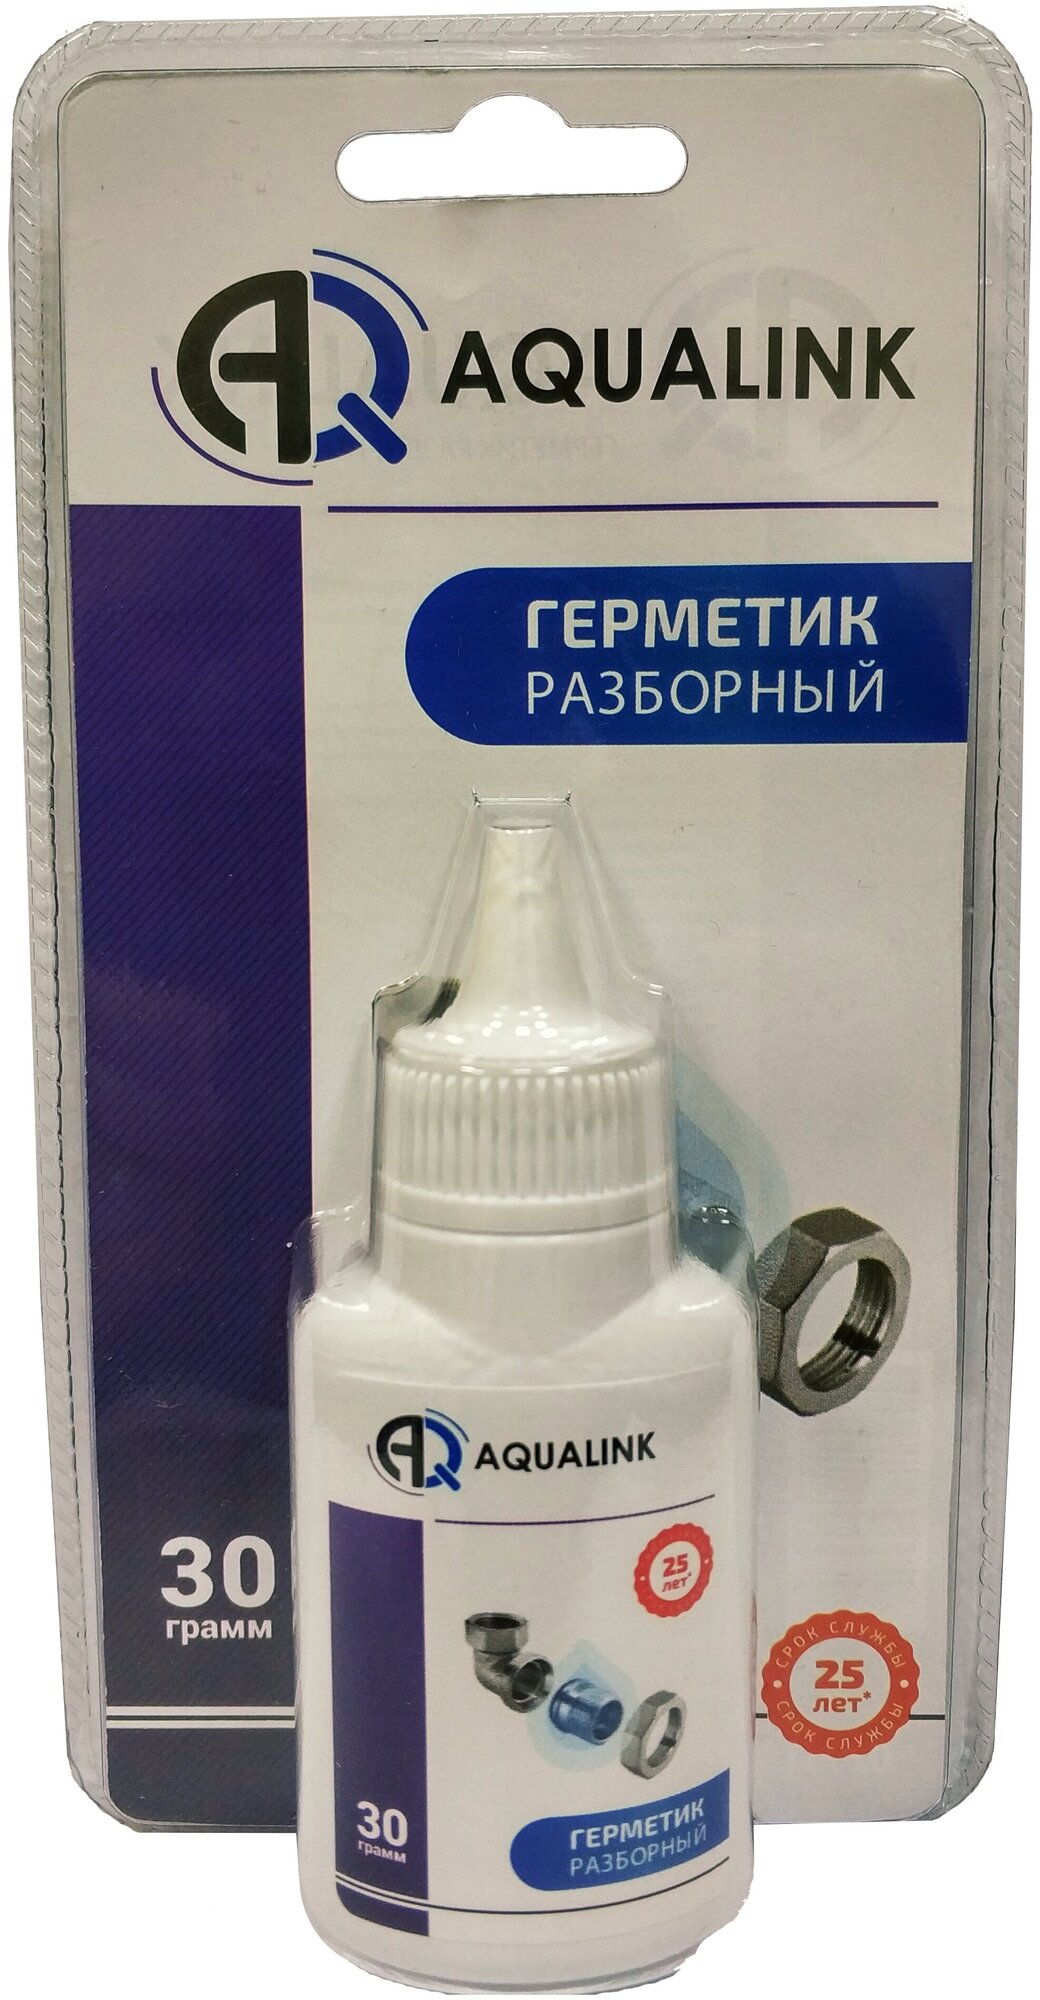 Герметик анаэробный разборный AQUALINK, 30 грамм